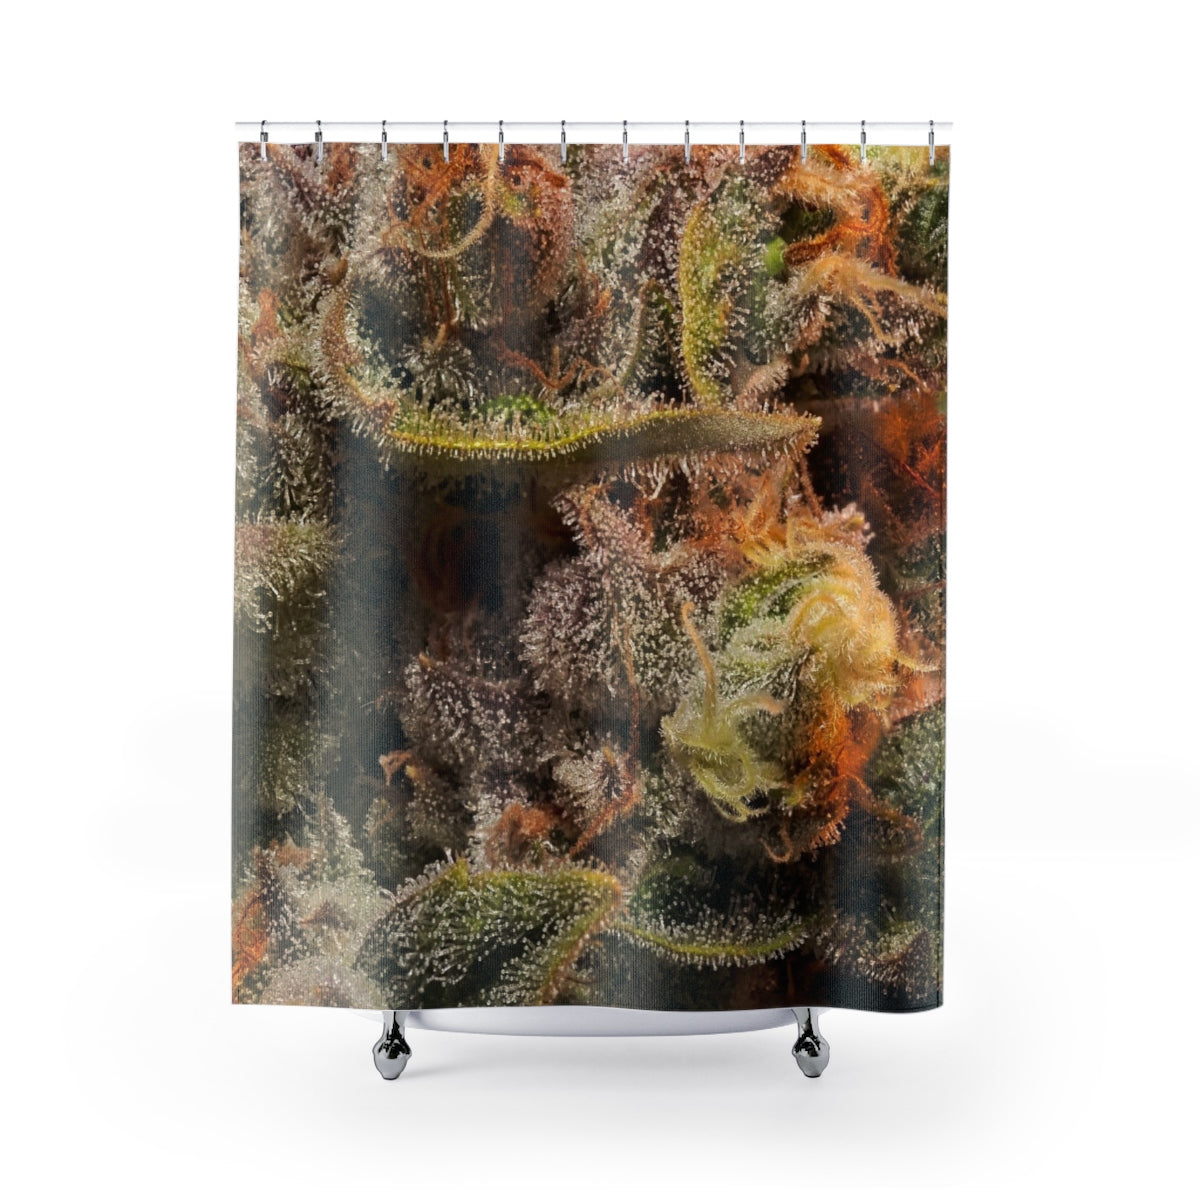 CannaNug Cannabis Shower Curtain